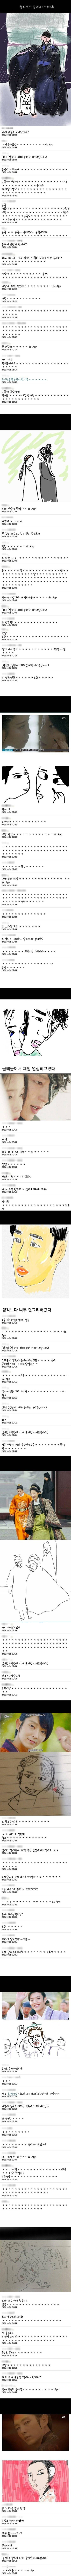 초심 잃은 달의연인 갤러리 사생대회.jpg | 인스티즈